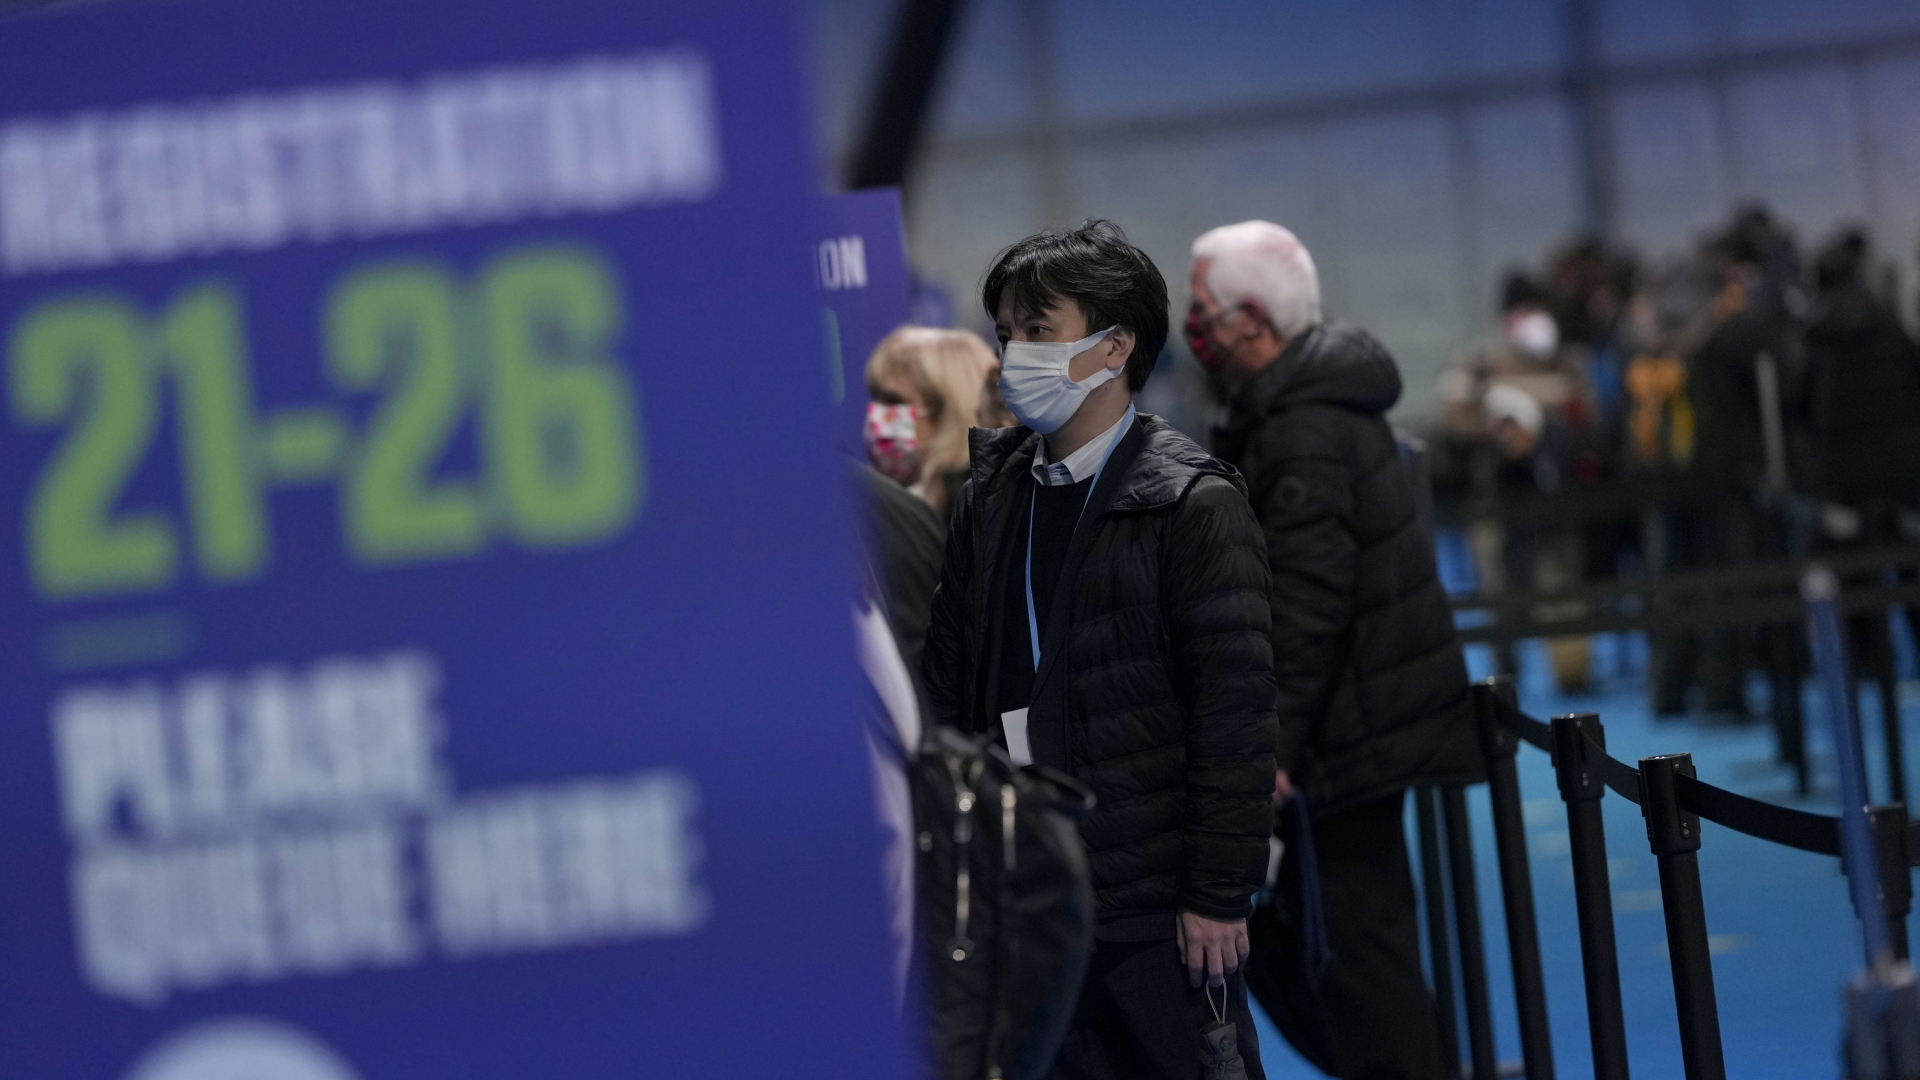 Teilnehmer der UN-Klimakonferenz COP26 in Glasgow bei der Registrierung | AP